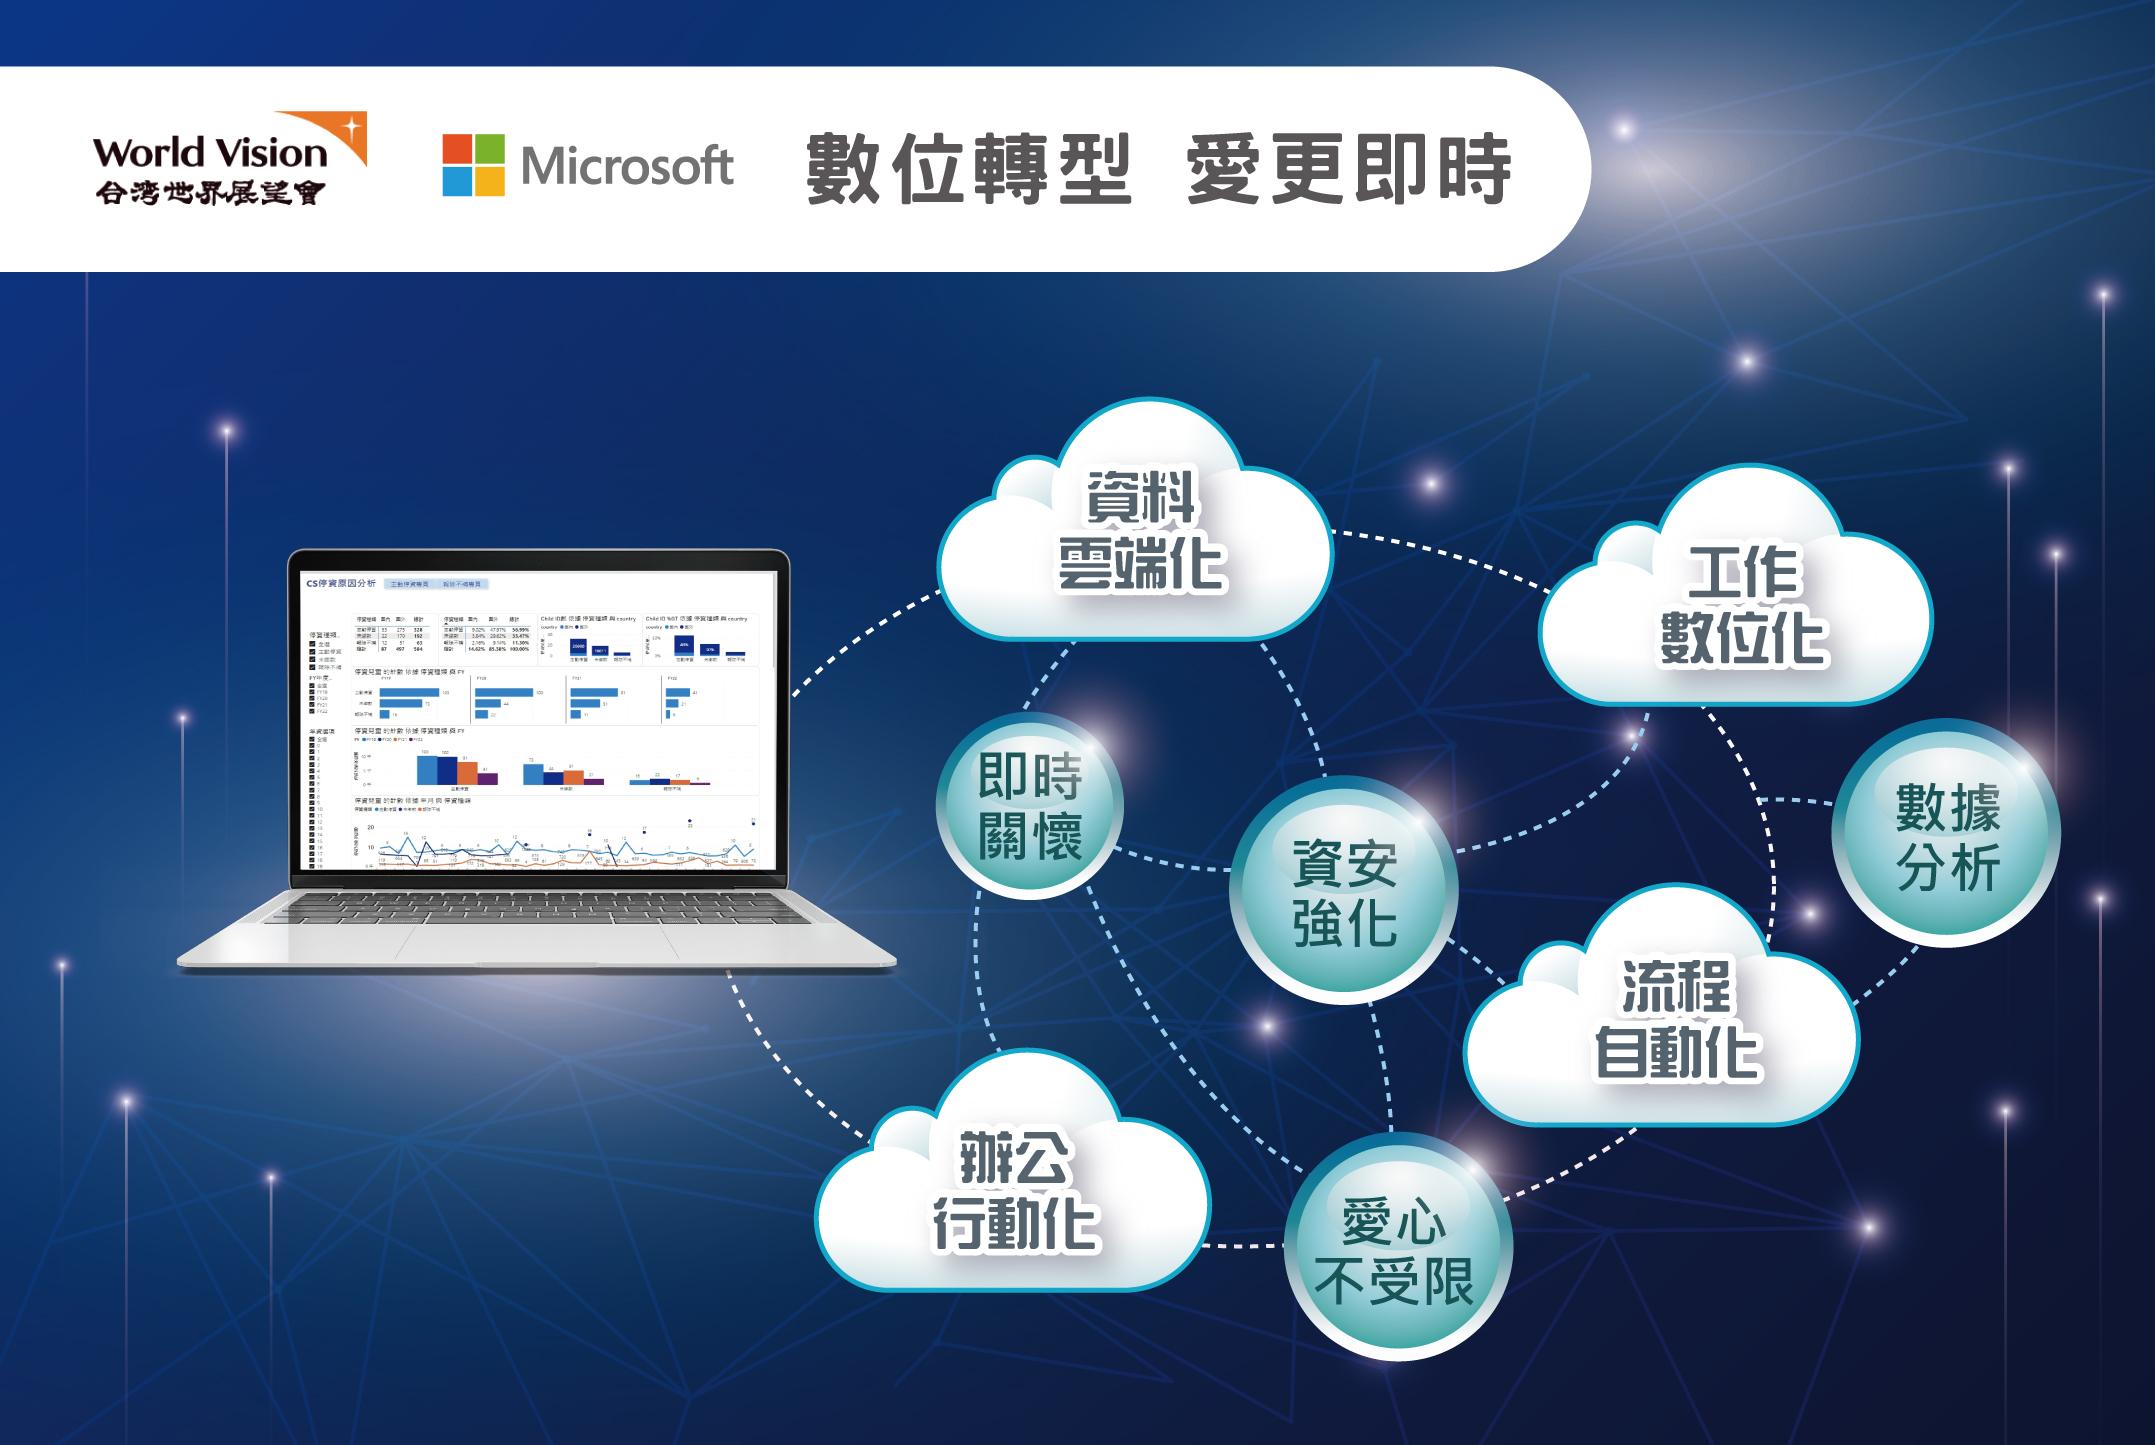 台灣世界展望會與台灣微軟一同實踐數位轉型  讓關懷能即時傳遞、愛心不再受地理限制